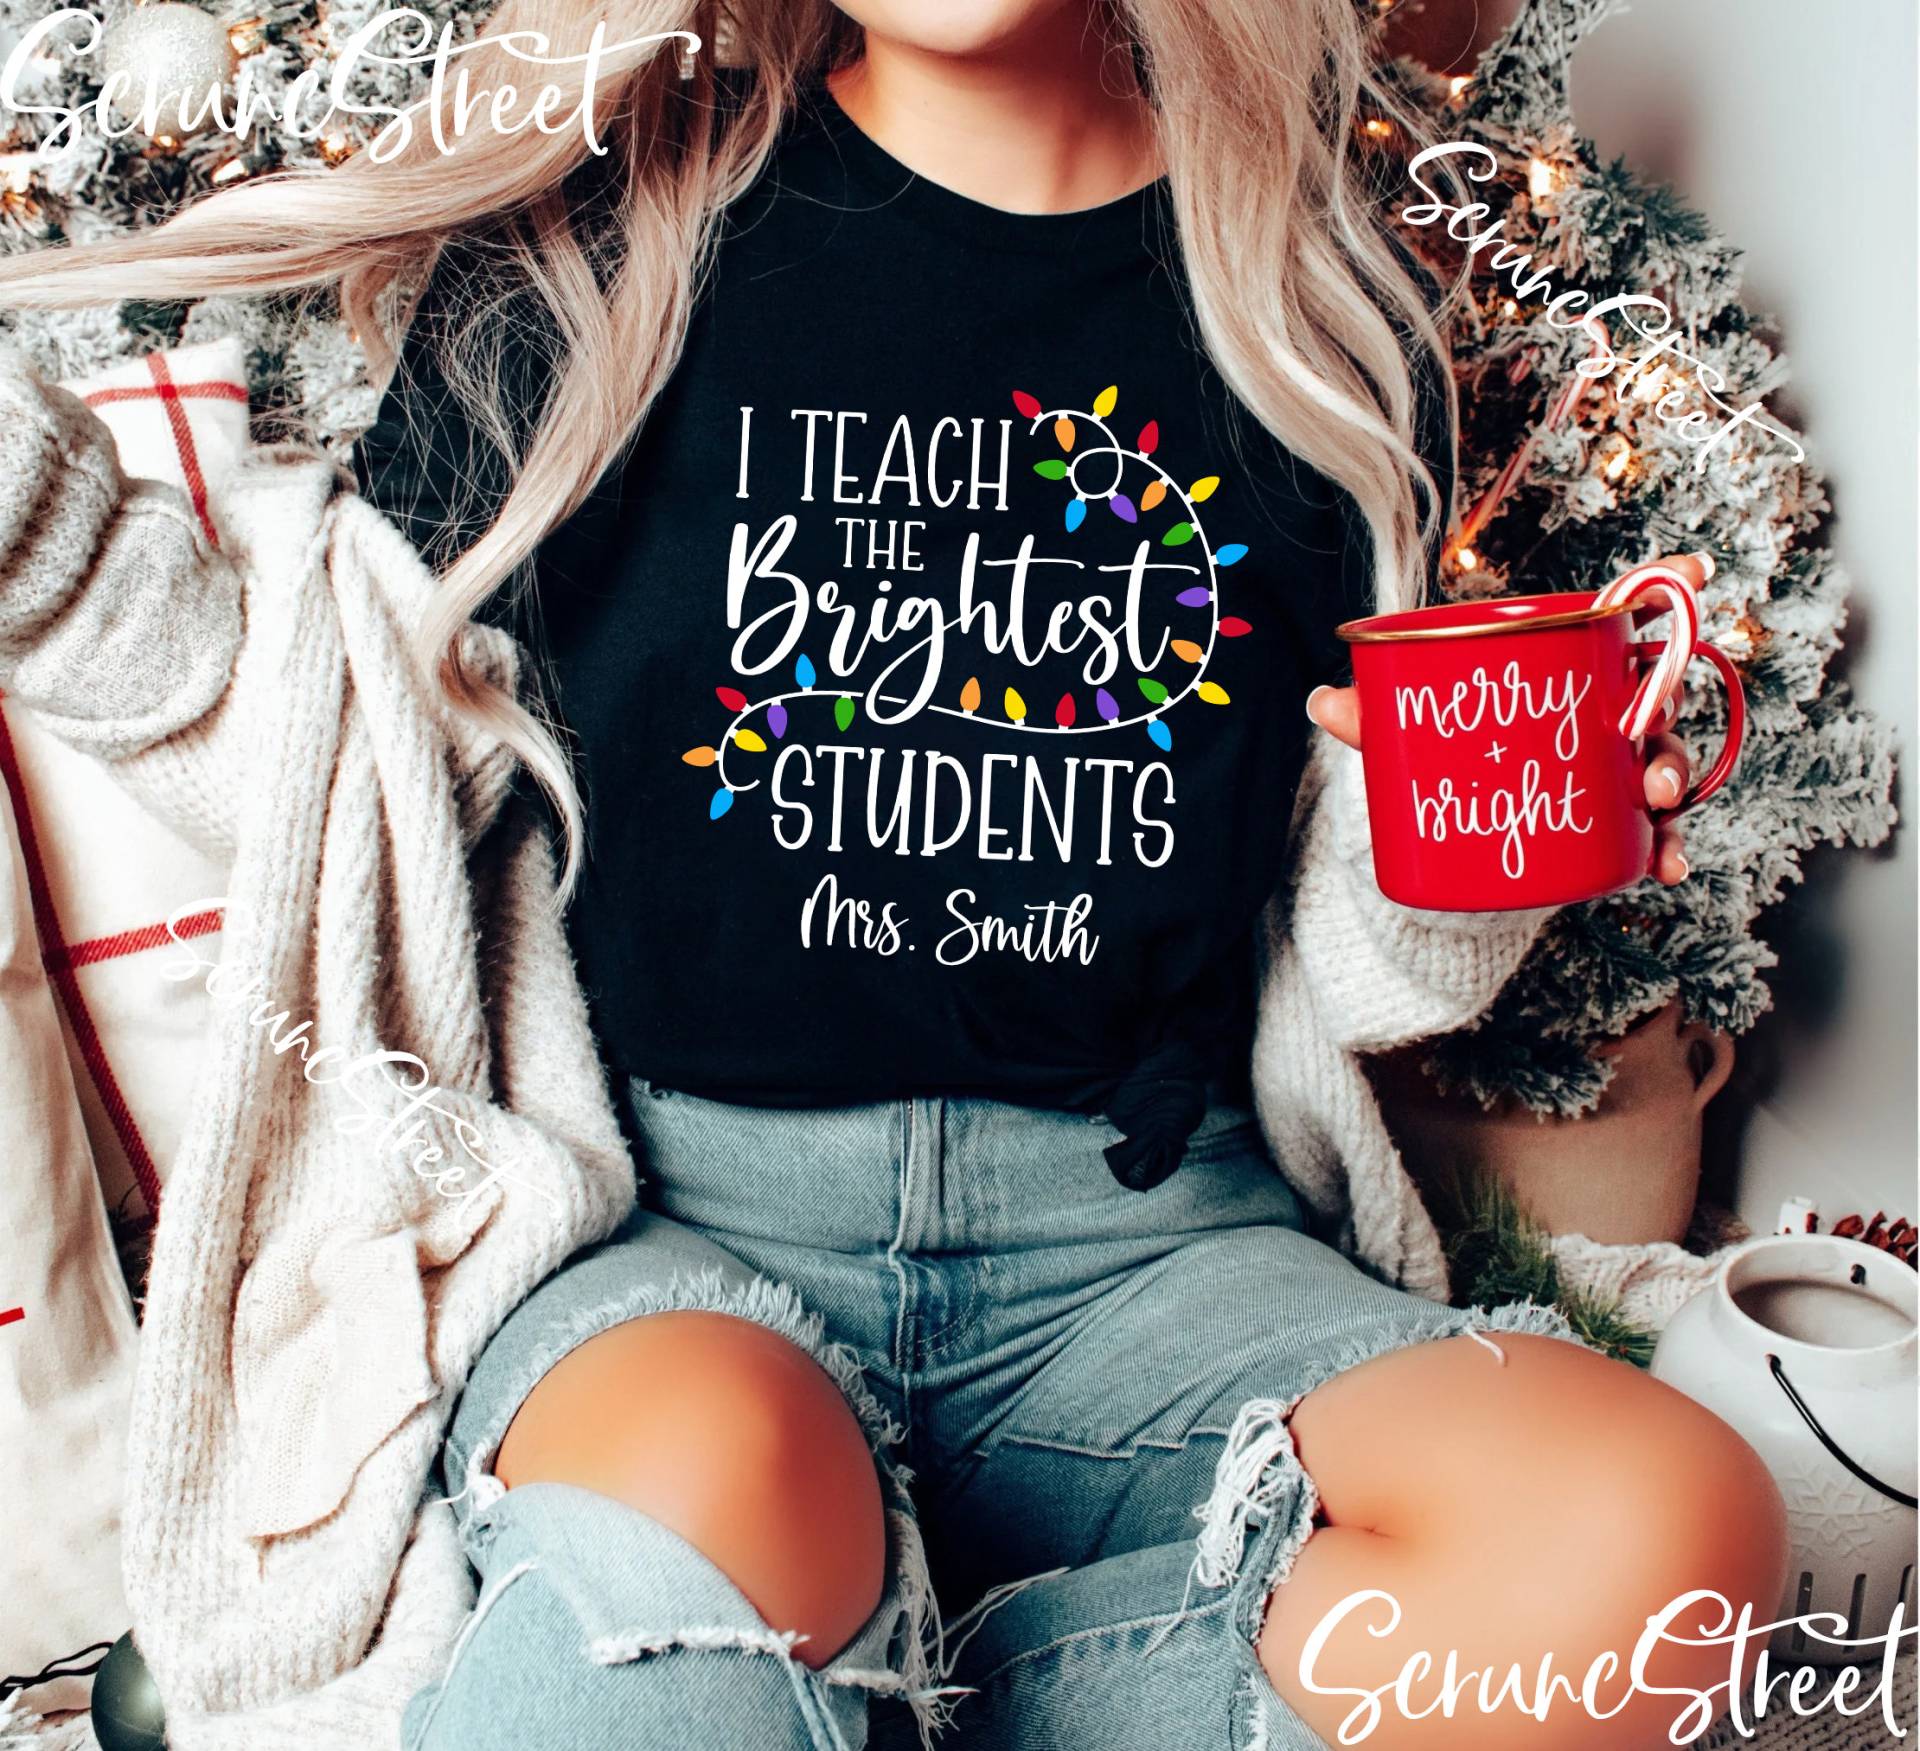 I Teach The Brightest Students Lustiges Lehrer Weihnachtsshirt - Personalisiertes Shirt Lehrershirt Weihnachtsgeschenke Für von ScruncStreet